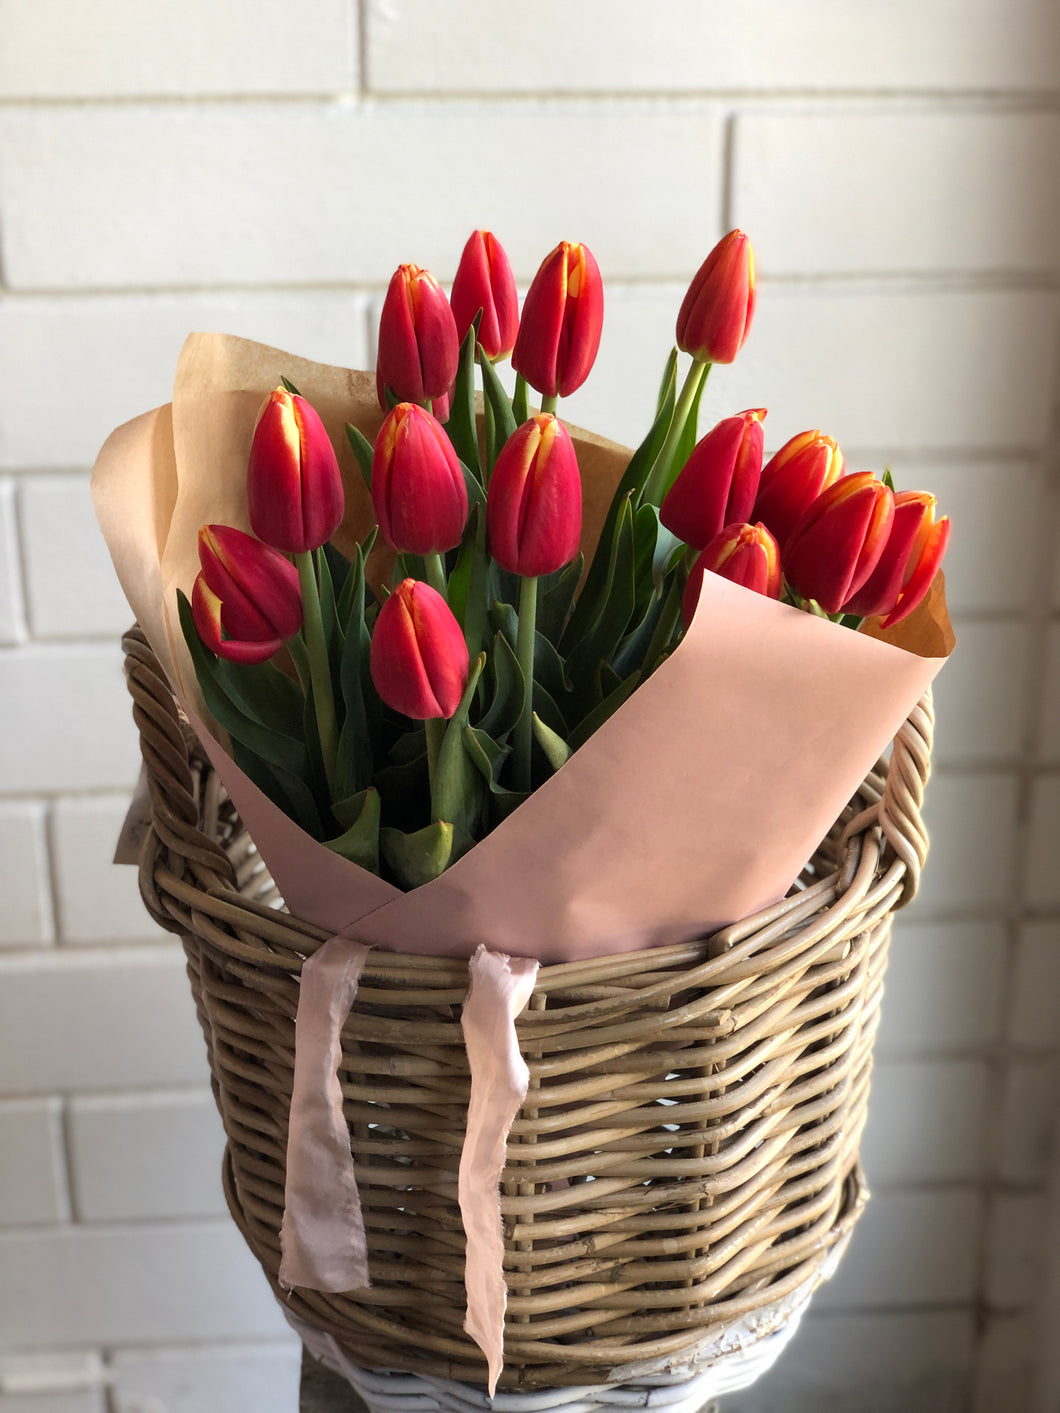 ♥ Valentine's Day ♥ - 'Tulip' Market Bunch